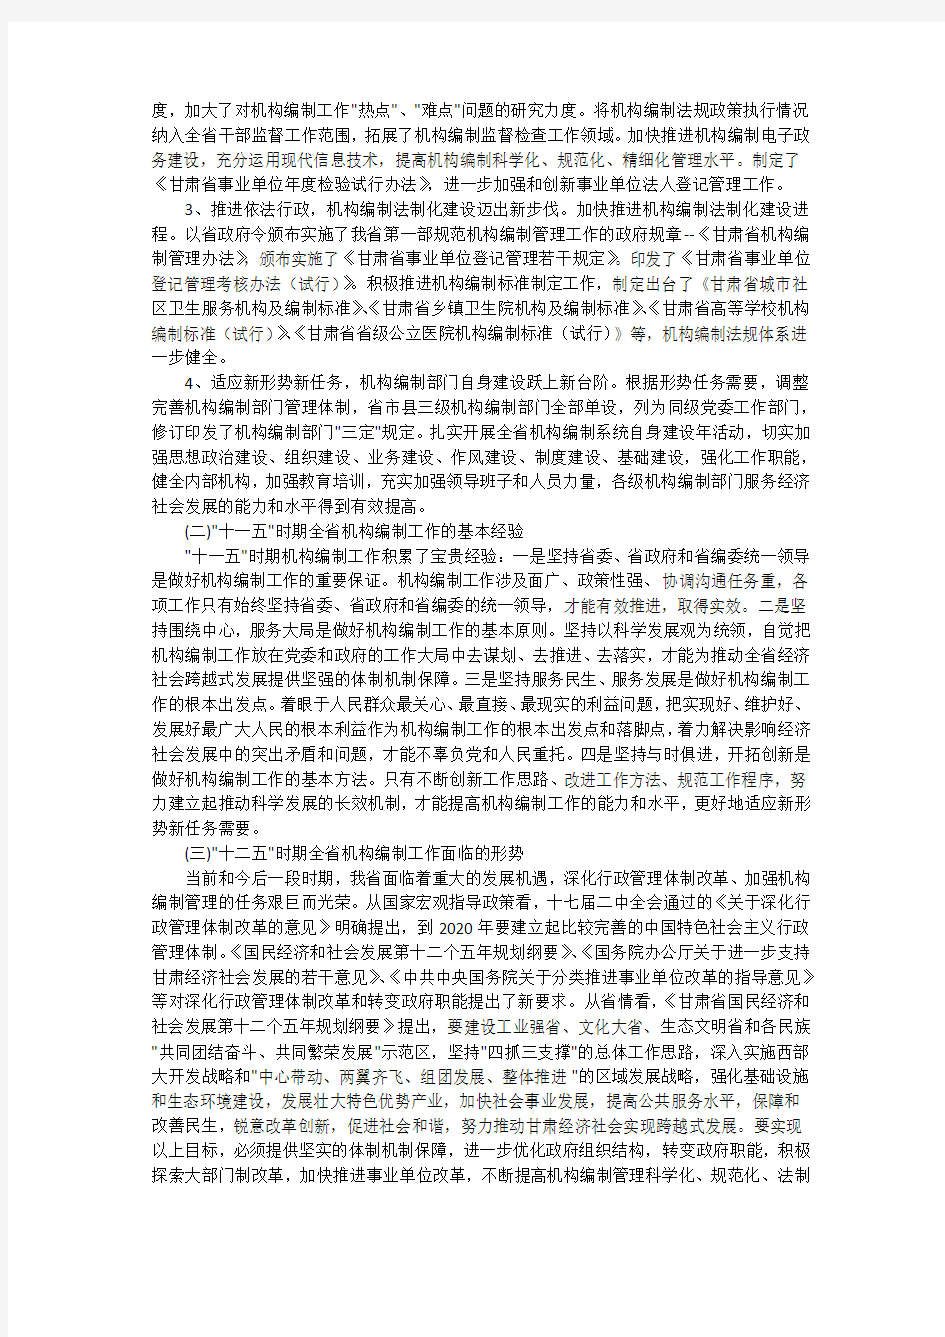 甘肃省“十二五”时期机构编制工作指导意见